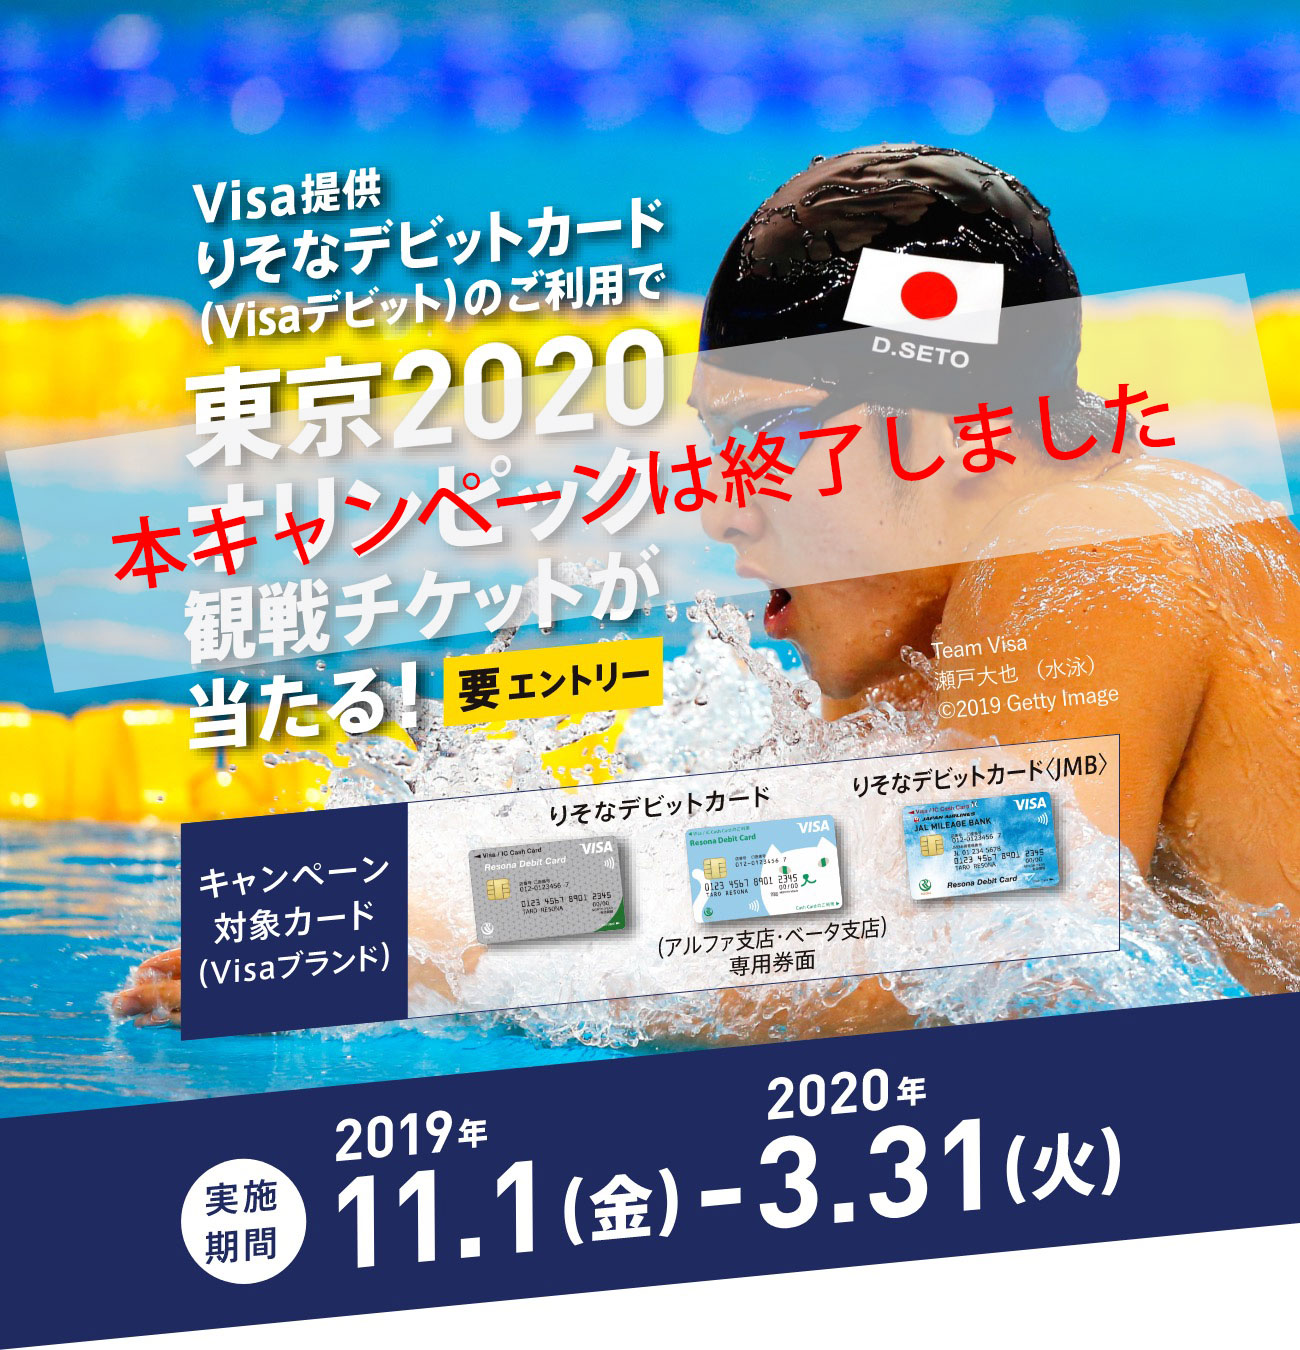 Visa提供りそなデビットカード（Visaデビット）のご利用で東京2020オリンピック観戦チケットが当たる！